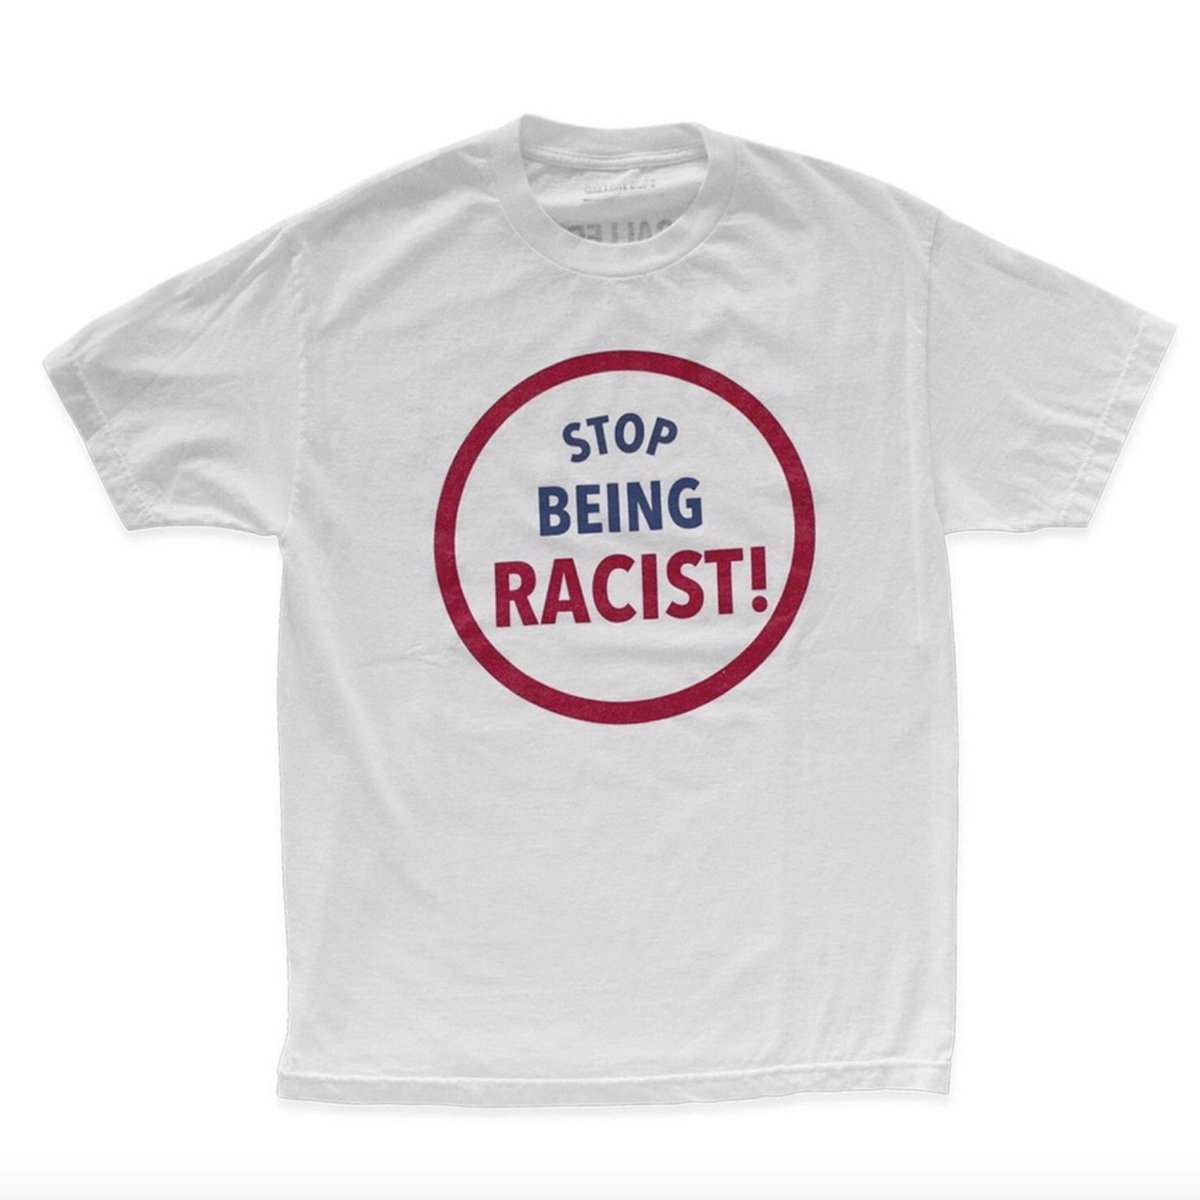 BlackLifesMatter hareketini desteklemek amacıyla GALLERY.DEPT özel bir t-shirt tasarımı ile karşımıza çıkmıştır. 2 renk ile satışa çıkan Tshirtler 125$’dan alıcılarını bulmuştur. “Irkcılığa dur” mesajı taşıyan ürünlerin elde edilen gelir eğitim kurumlarına bağışlanacaktır.